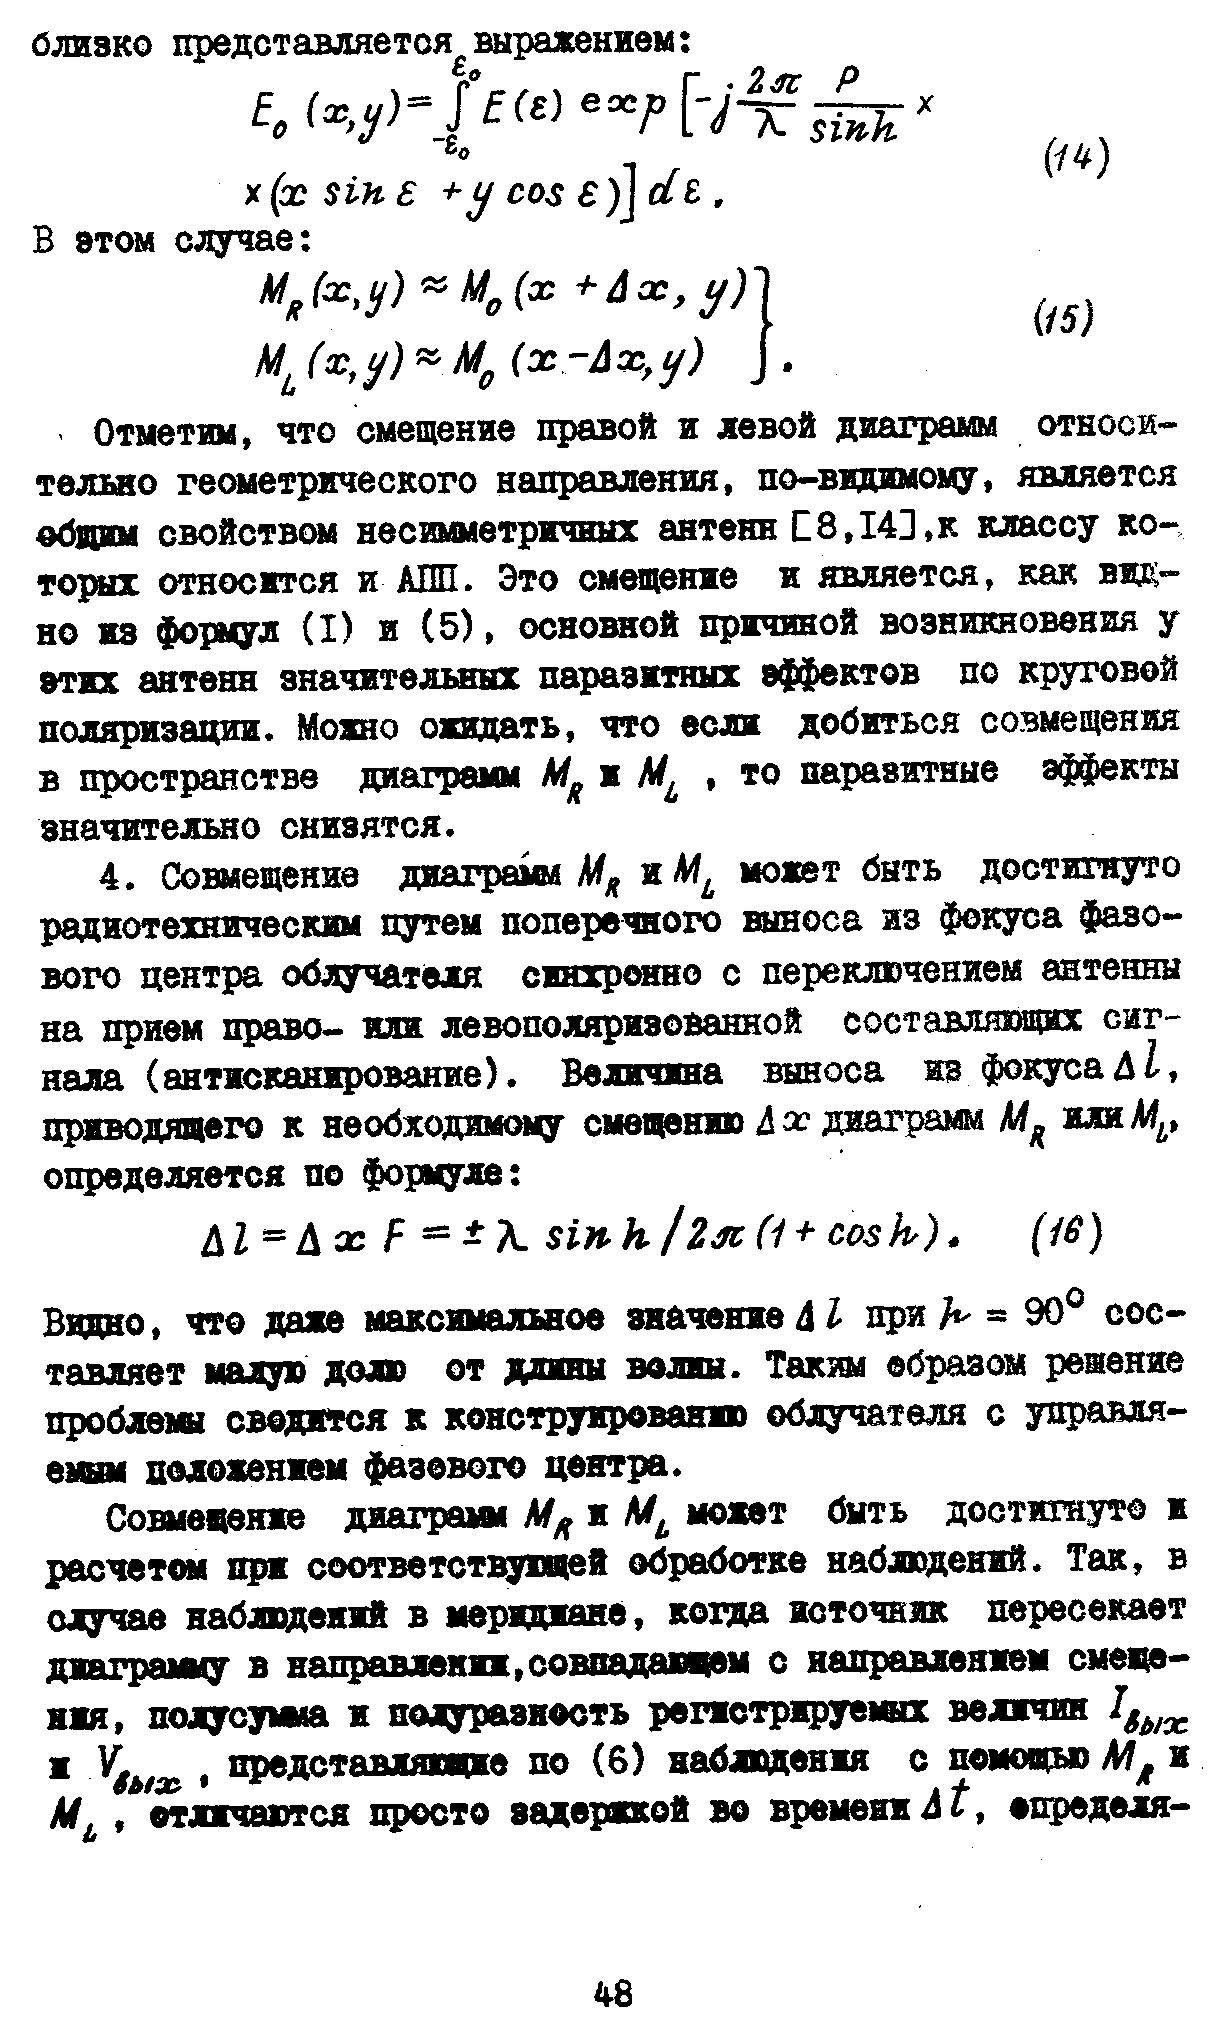 Коржавин А.Н.,стр.6